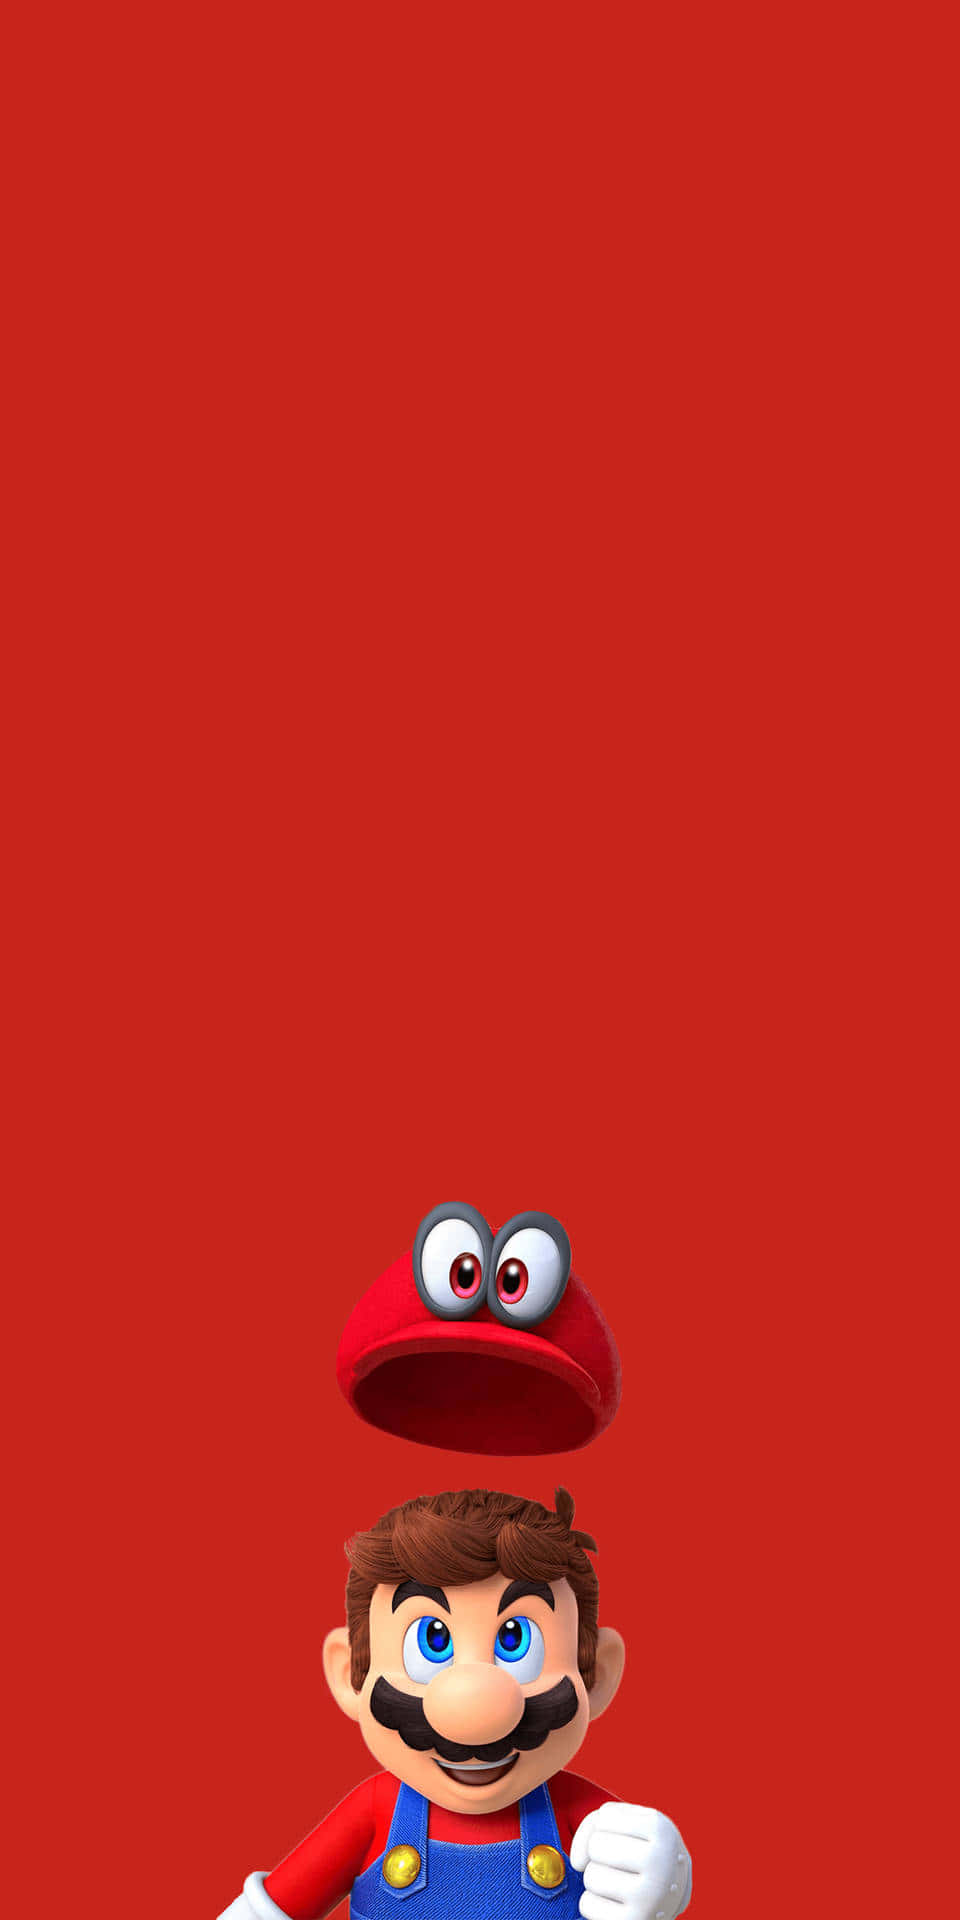 Einmario-charakter Steht Auf Einem Roten Hintergrund. Wallpaper